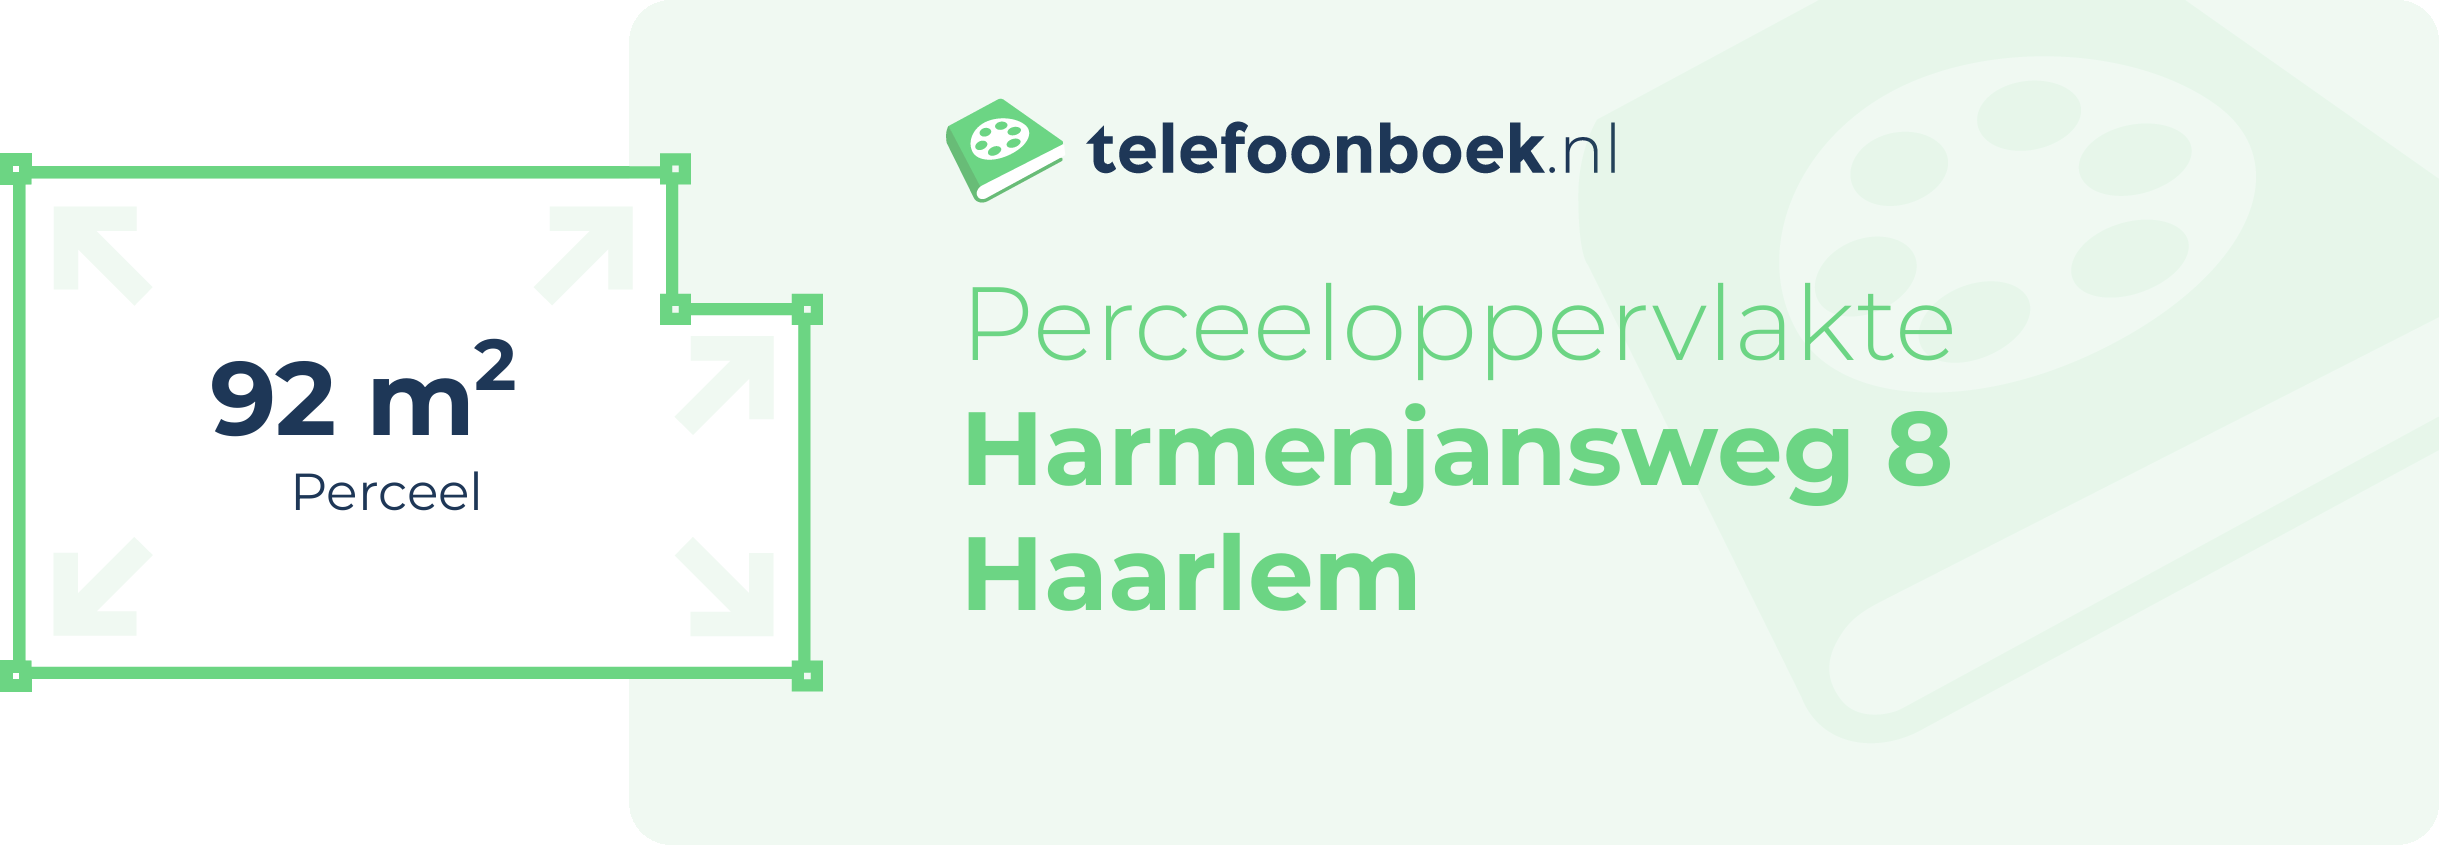 Perceeloppervlakte Harmenjansweg 8 Haarlem